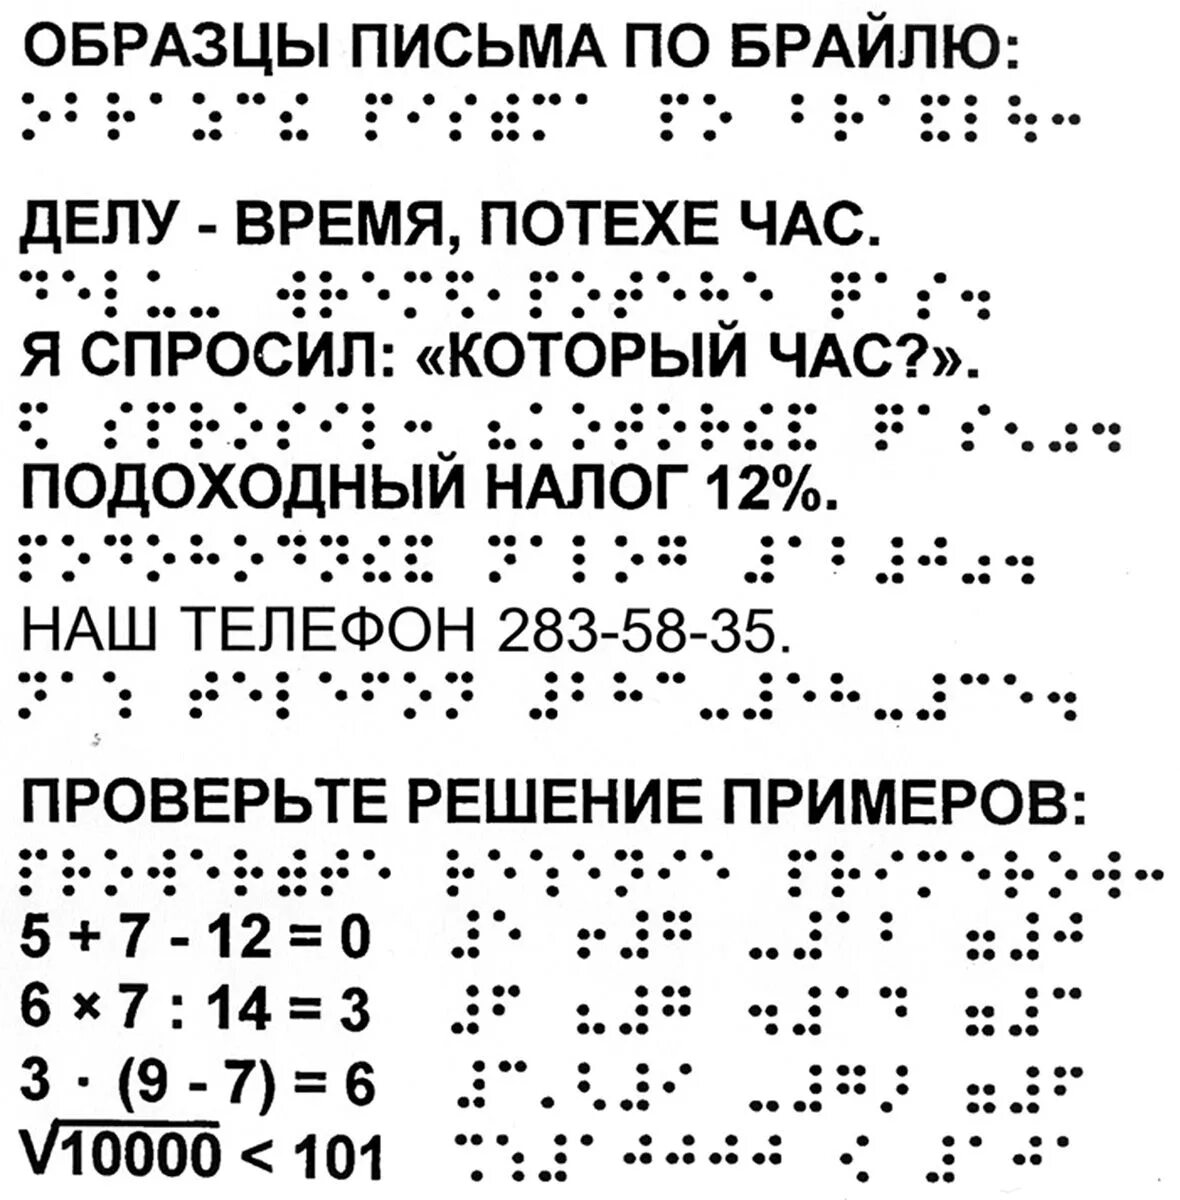 Знаки шрифта брайля. Азбука по системе Брайля. Рельефно-точечный шрифт Брайля. Алфавит Брайля на русском для слепых. Азбука для слепых шрифт Брайля.